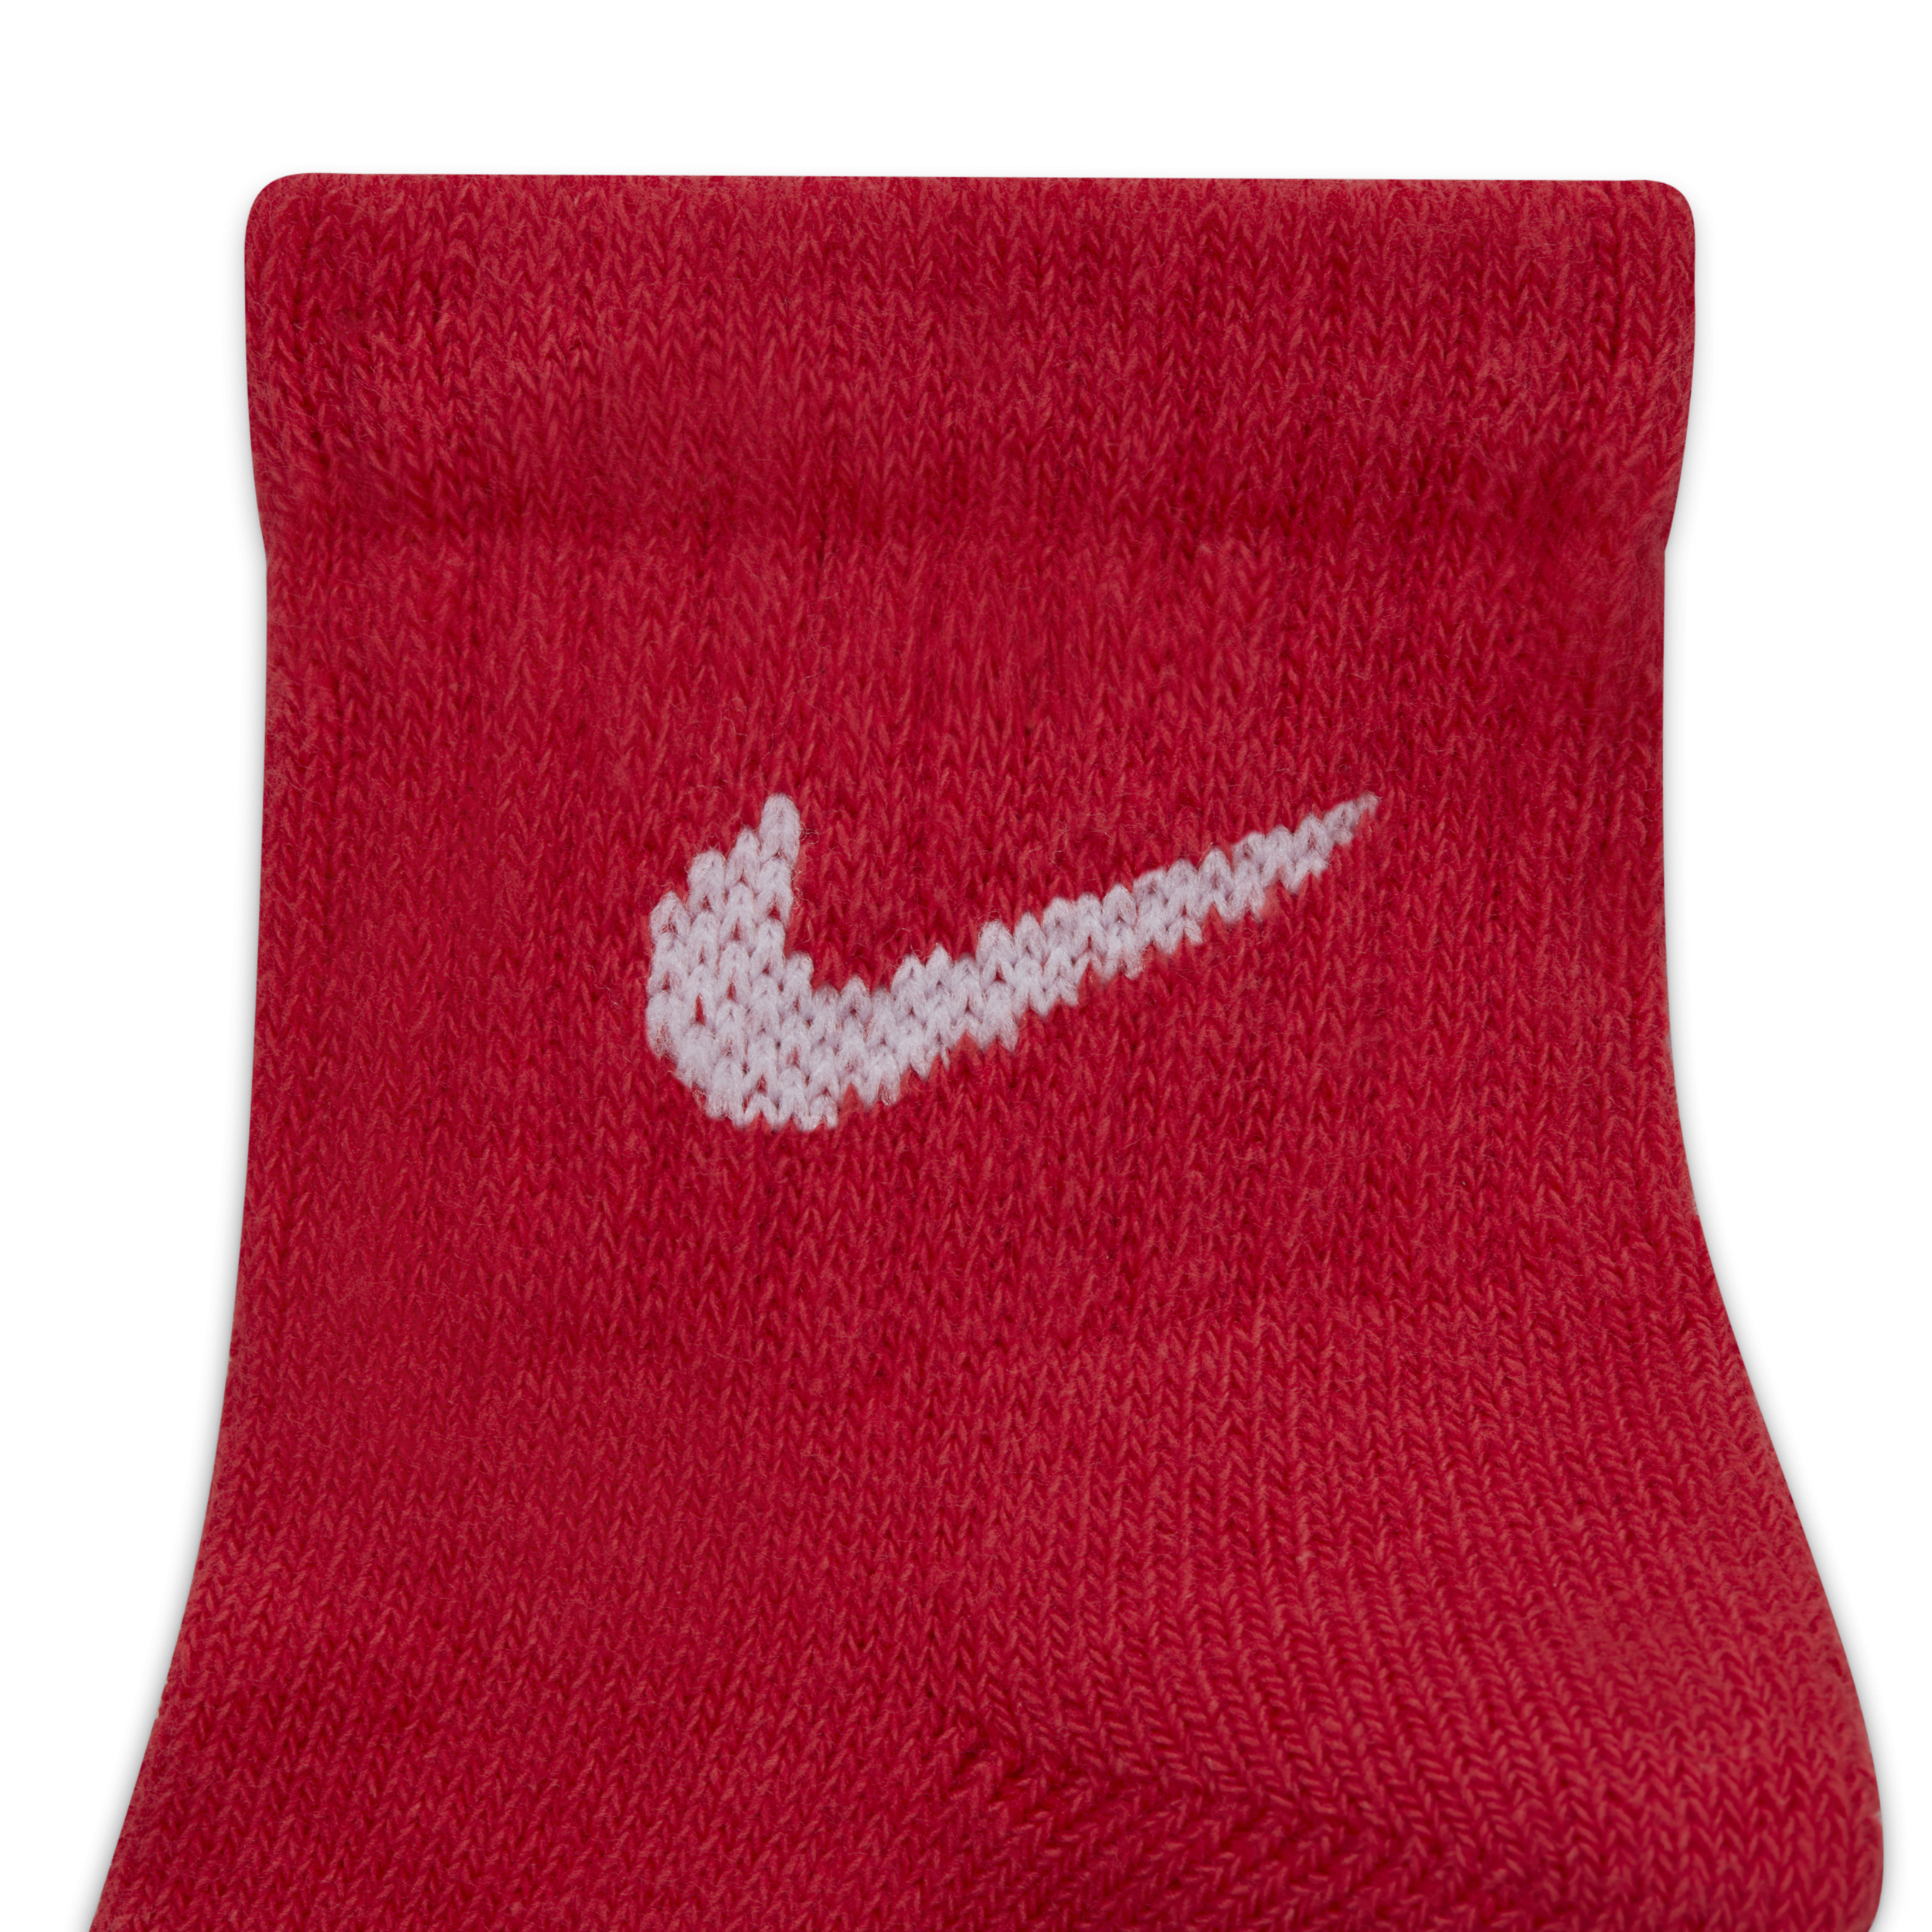 Nike Dri Fit enkelsokken voor kleuters (6 paar) Meerkleurig